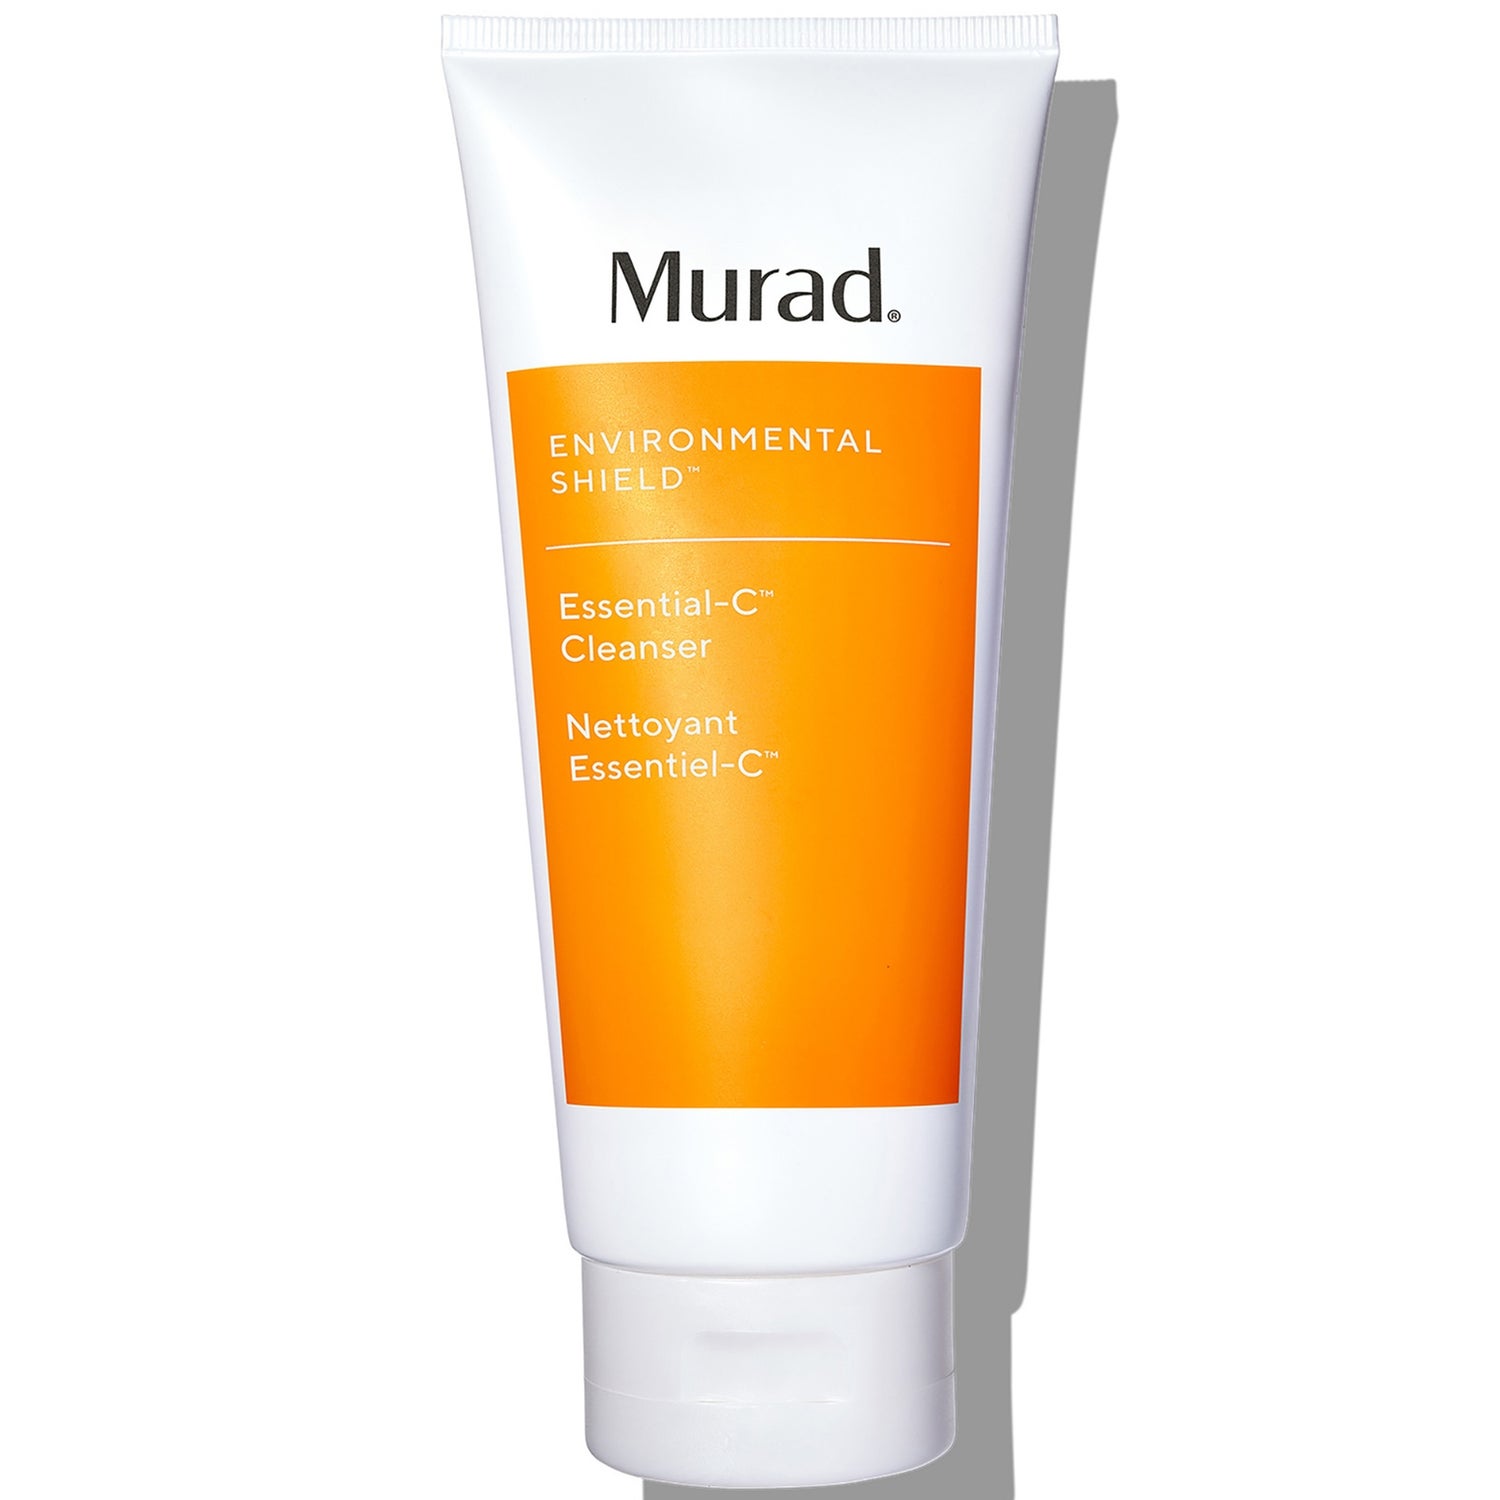 Murad Essential C Daily Cleanser 6.75 oz